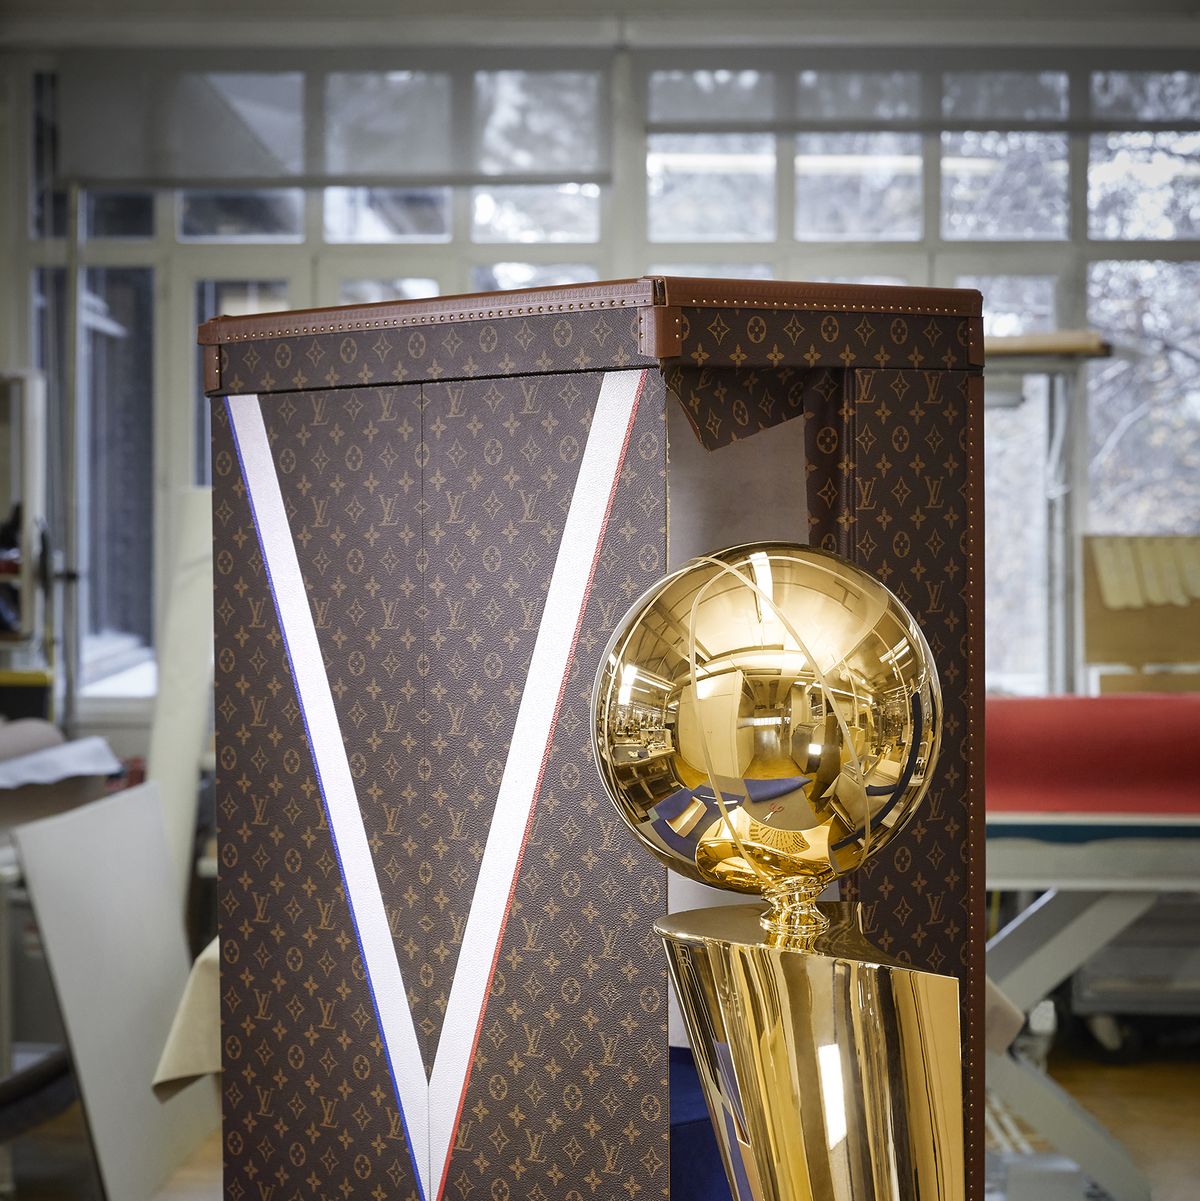 Louis Vuitton x NBA Basketball